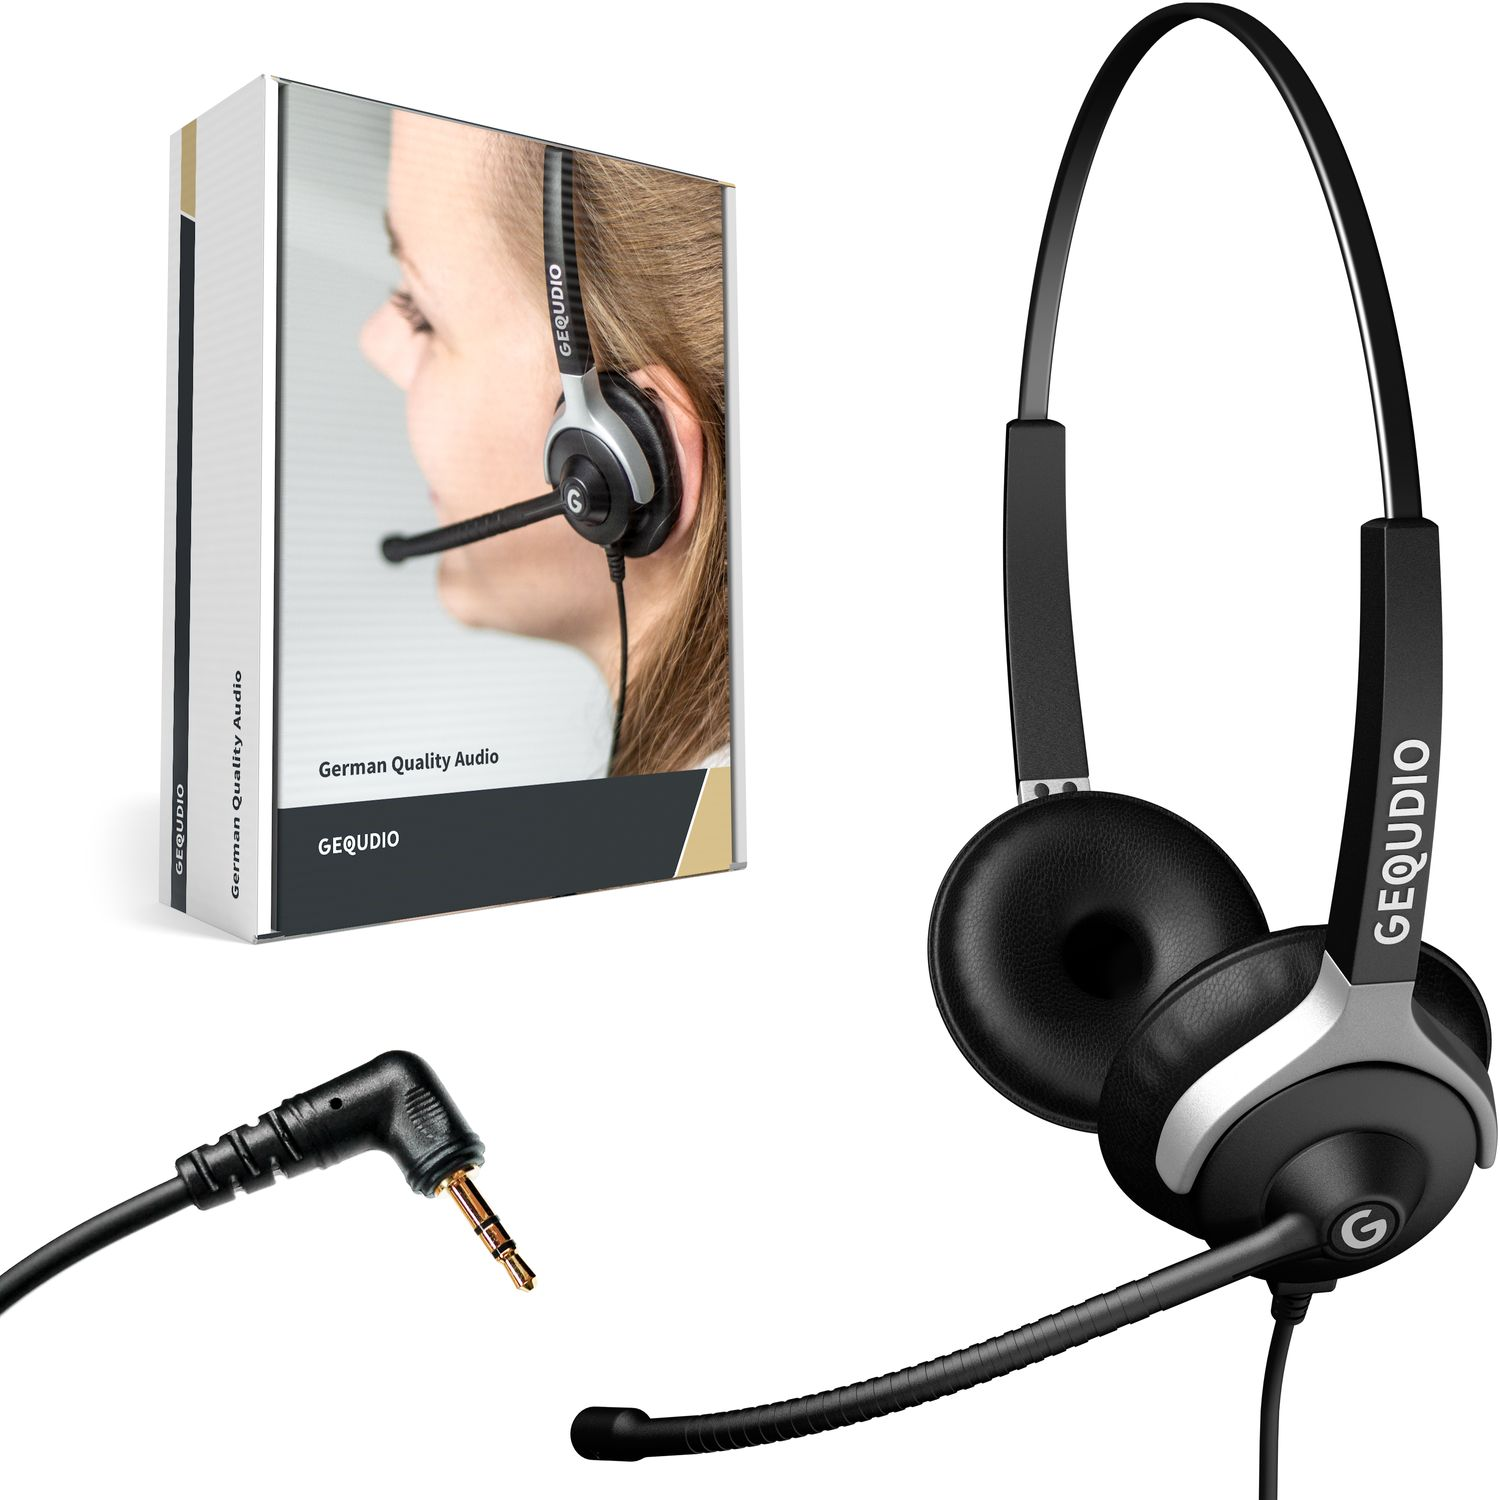 GEQUDIO Headset 2-Ohr 2,5mm mit On-ear Headset Klinke, Schwarz